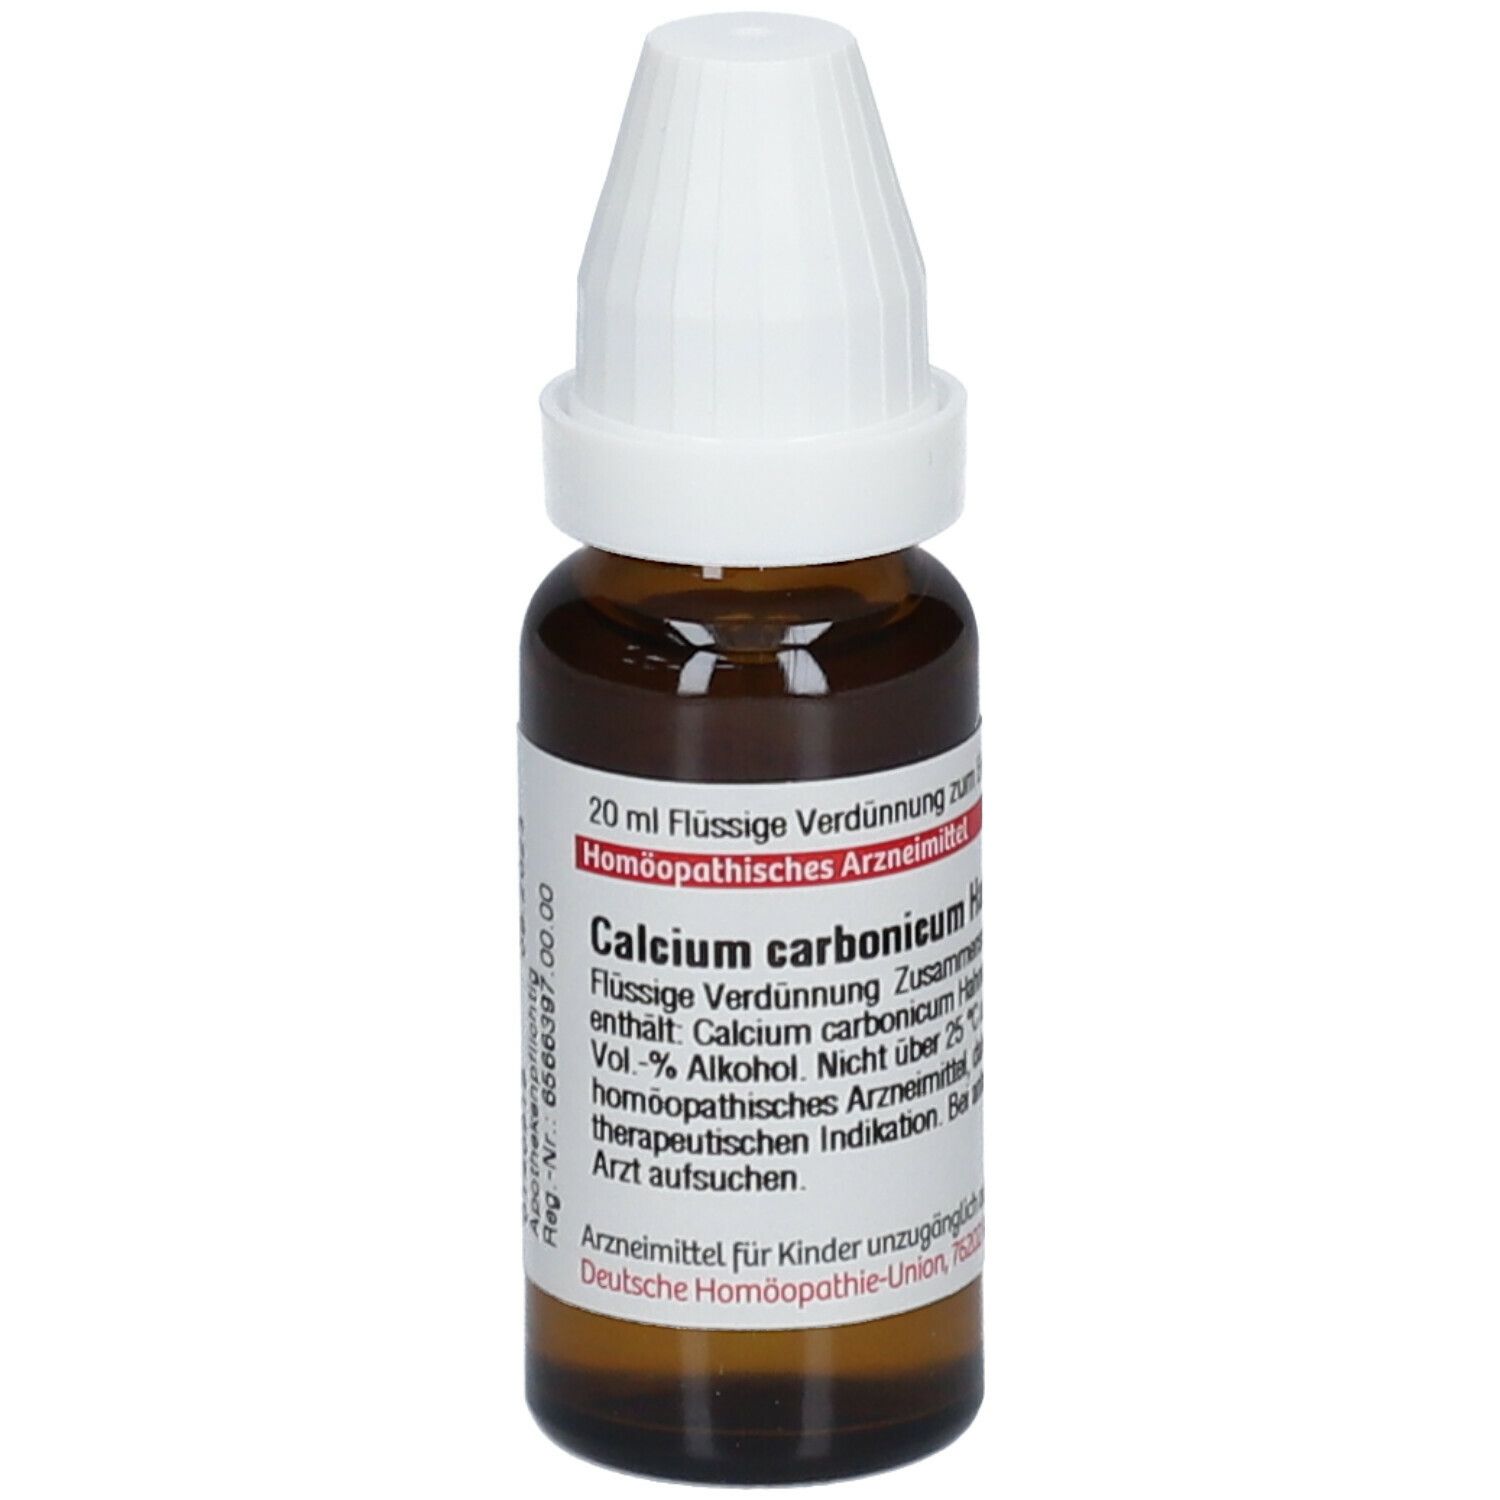 DHU Calcium Carbonicum Hahnemanni C6